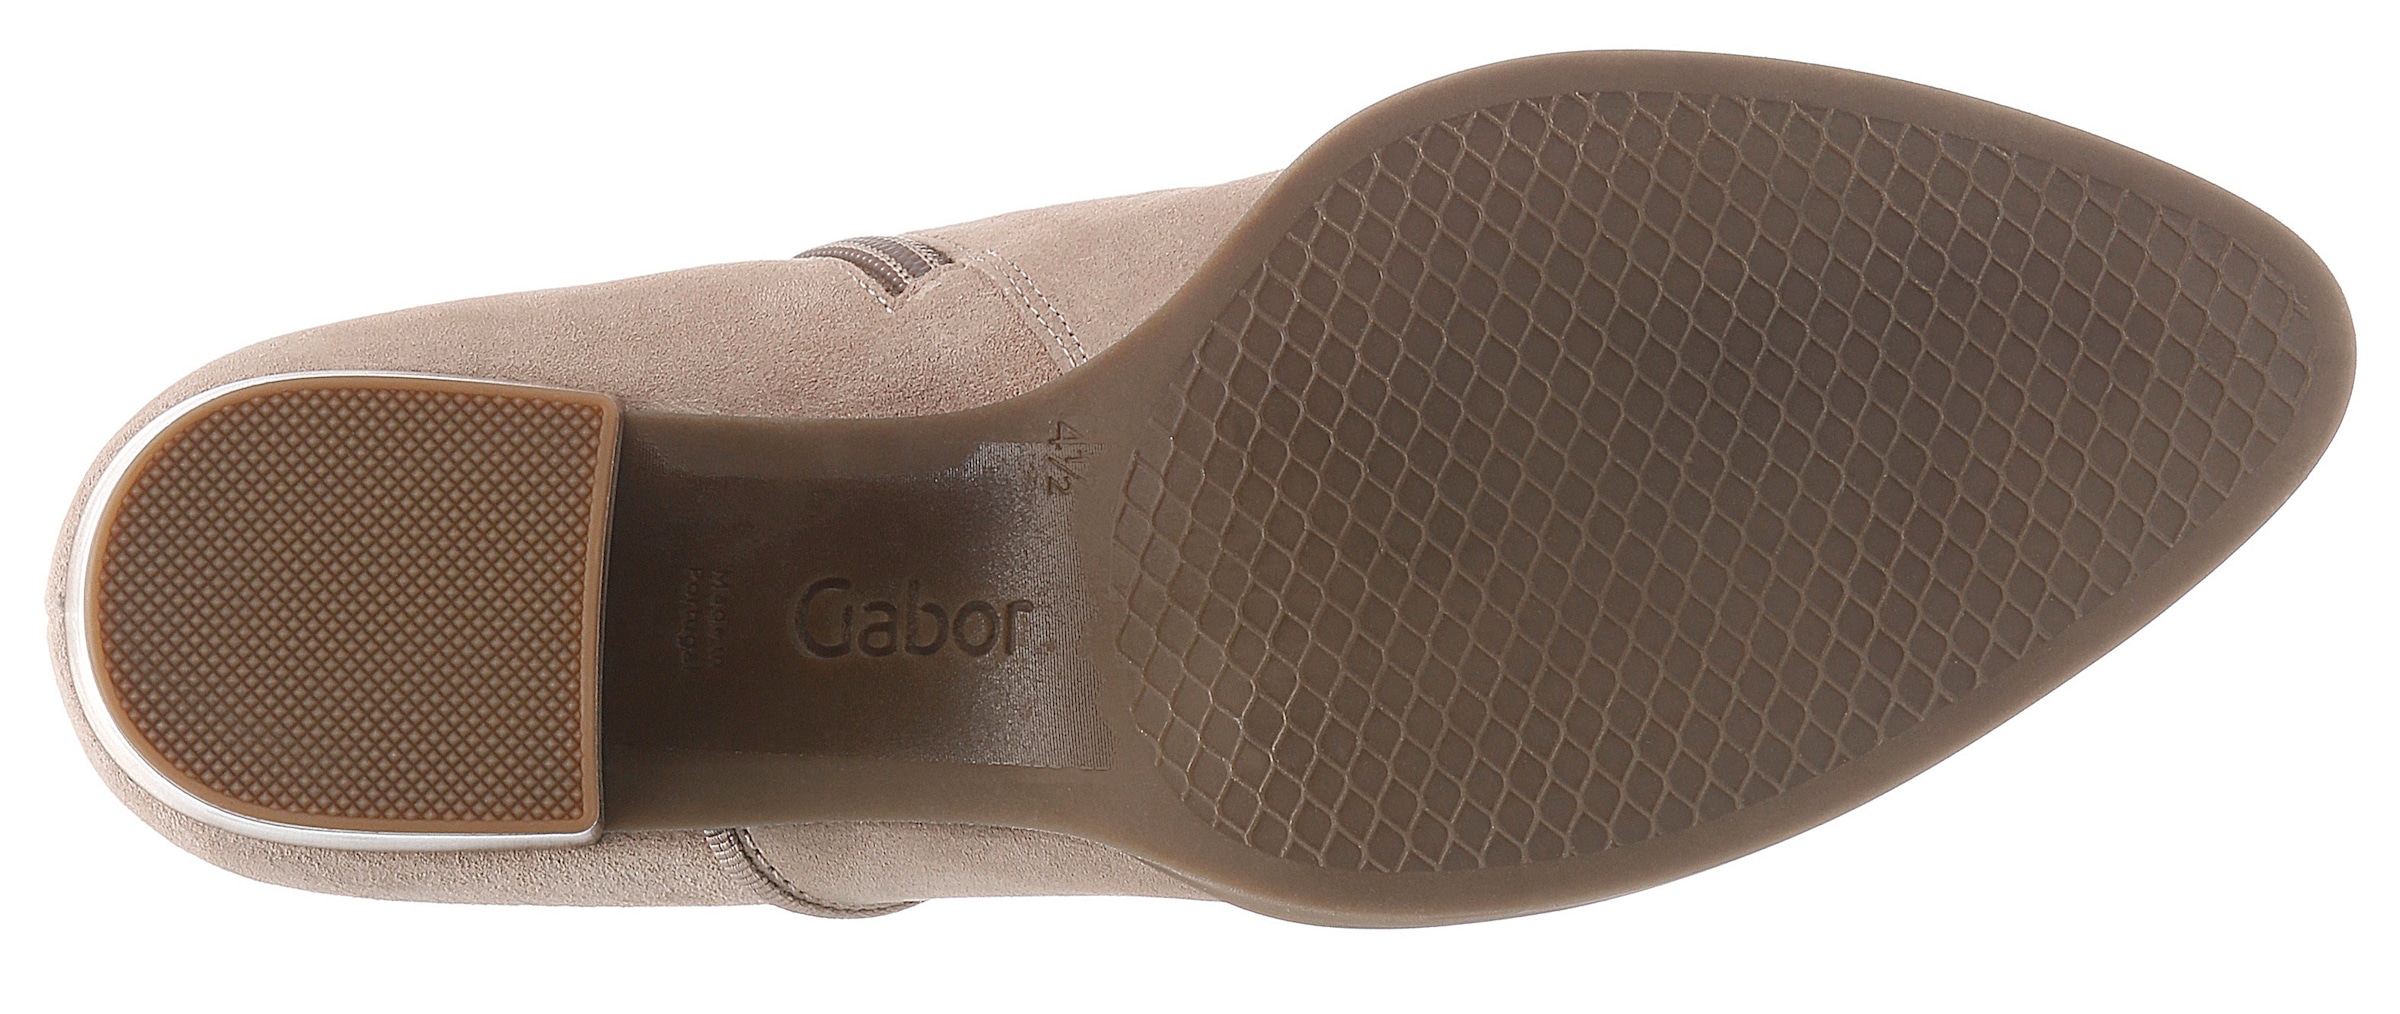 Gabor Stiefelette »ANCONA«, Blockabsatz, Ankleboots, Cowboy Stiefelette in spiter Form, Weite G